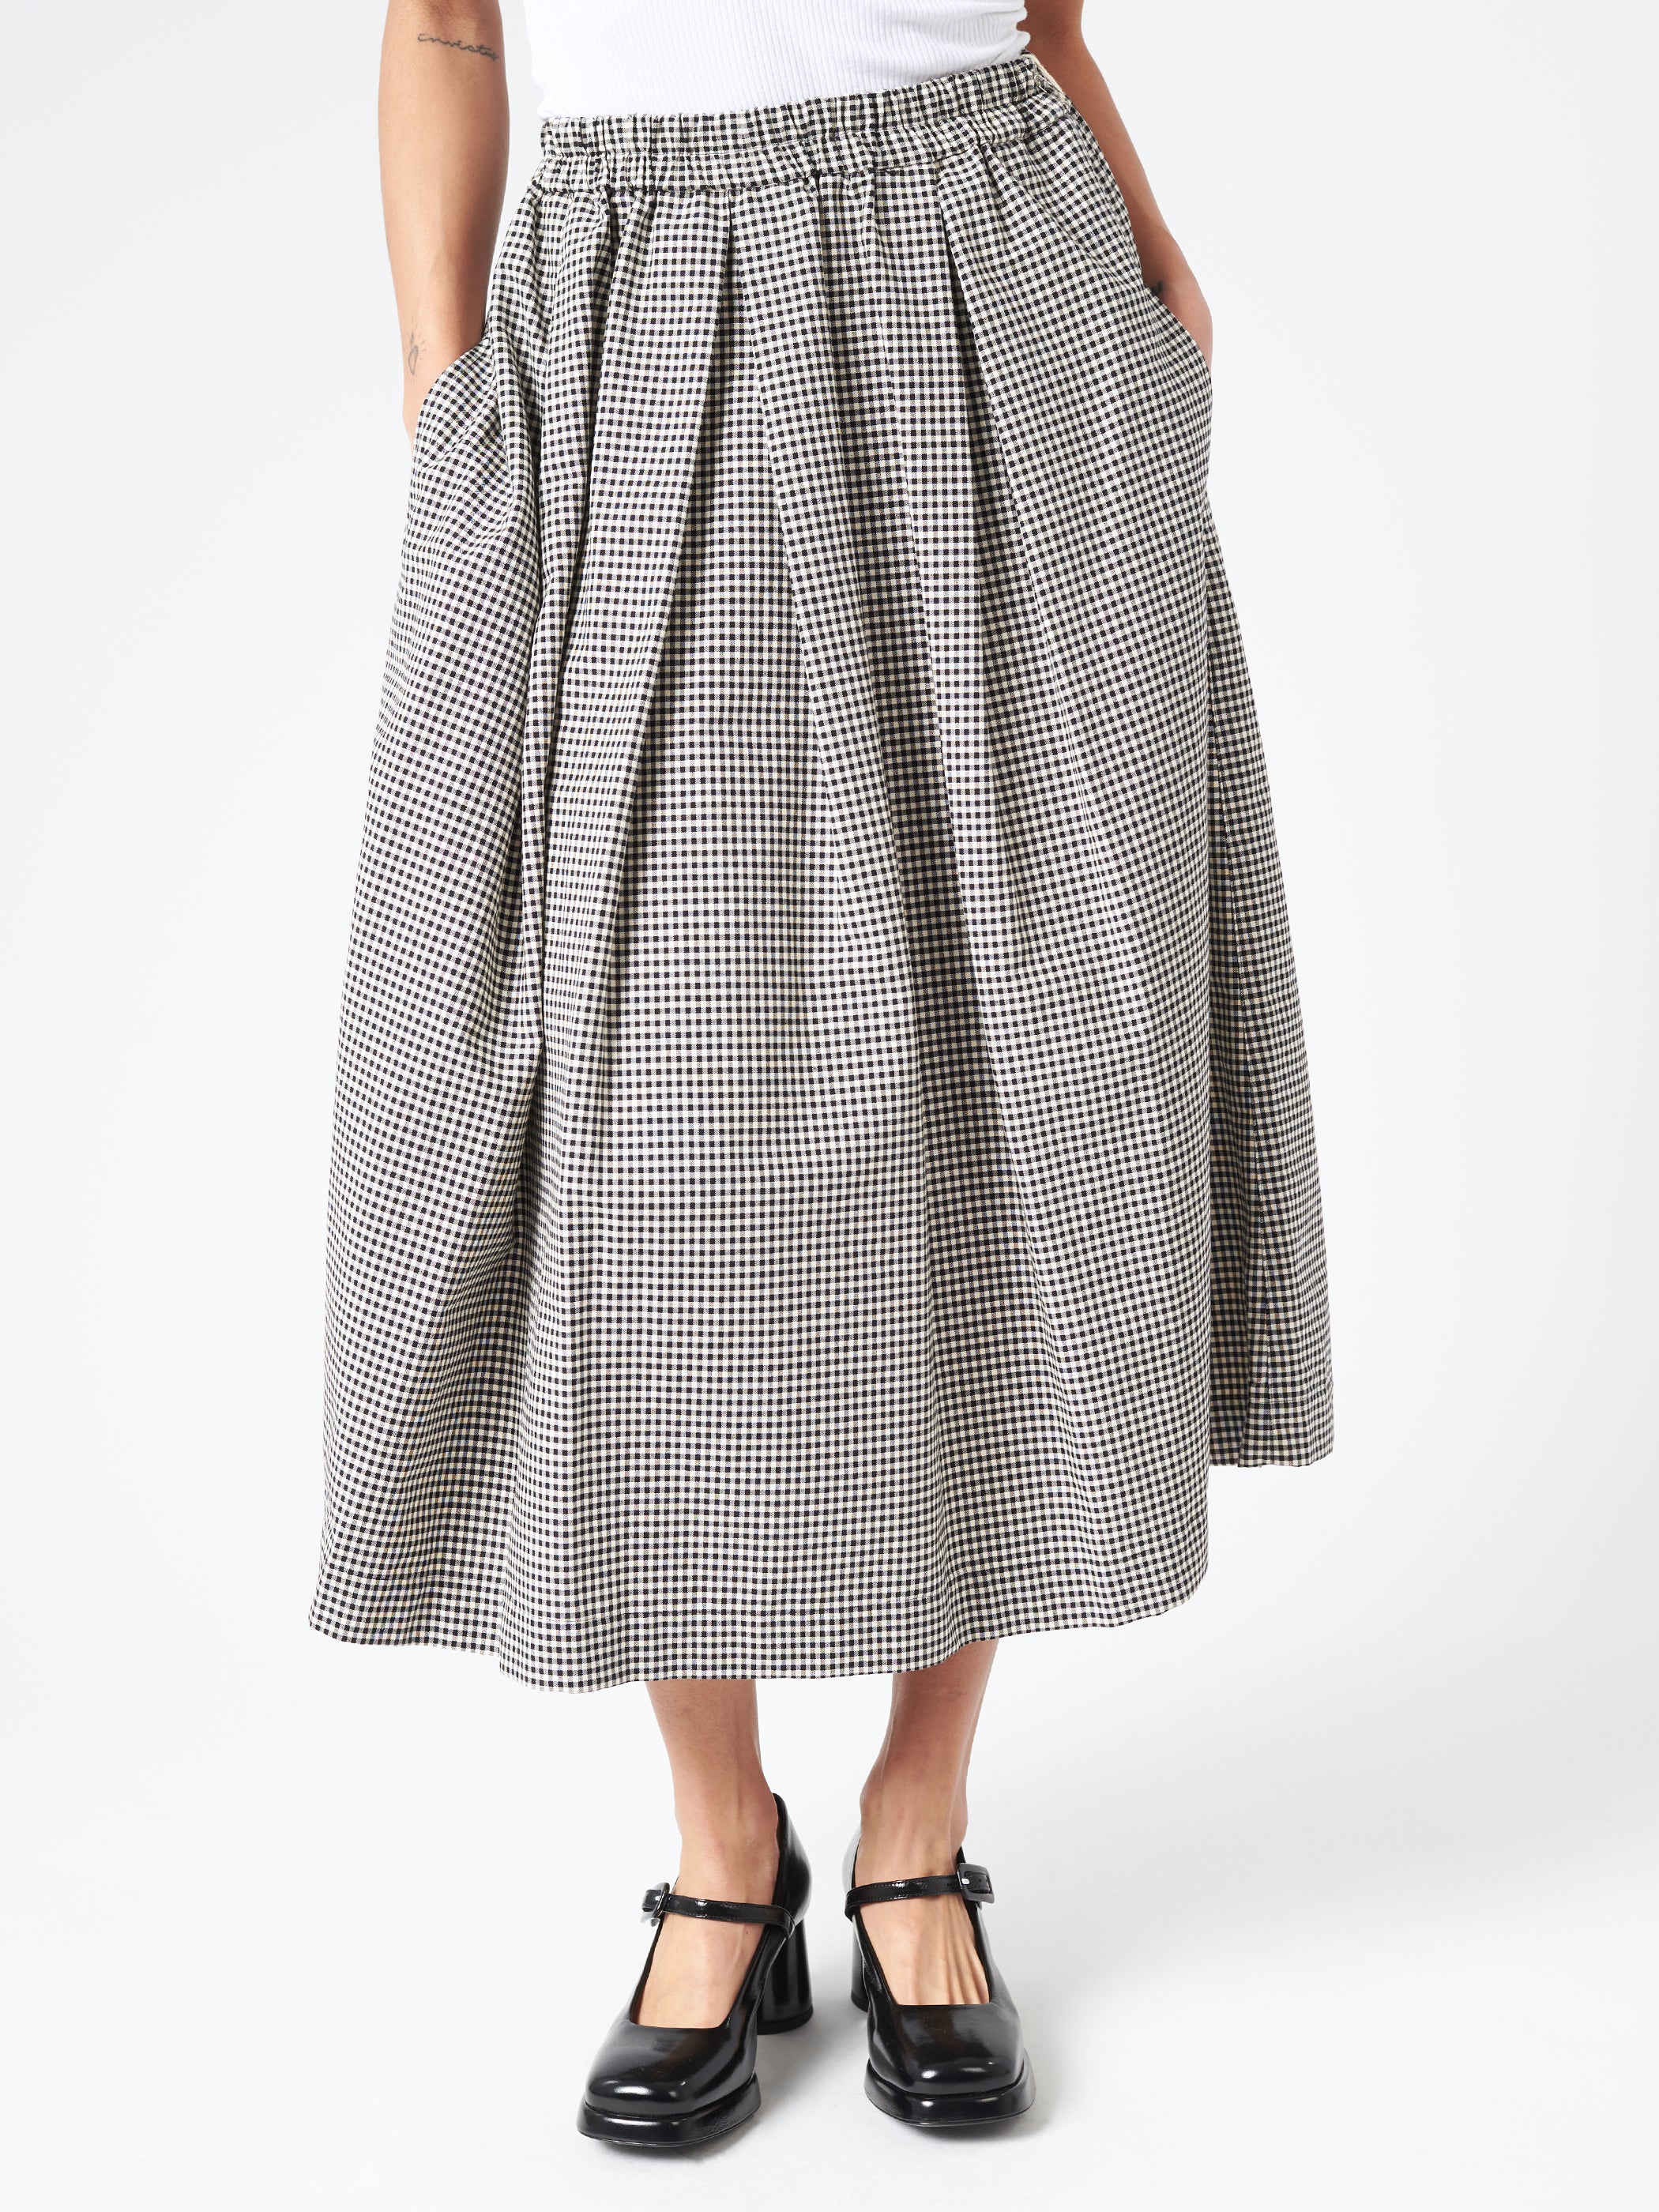 Gingham Oxford Box Tuck Skirt